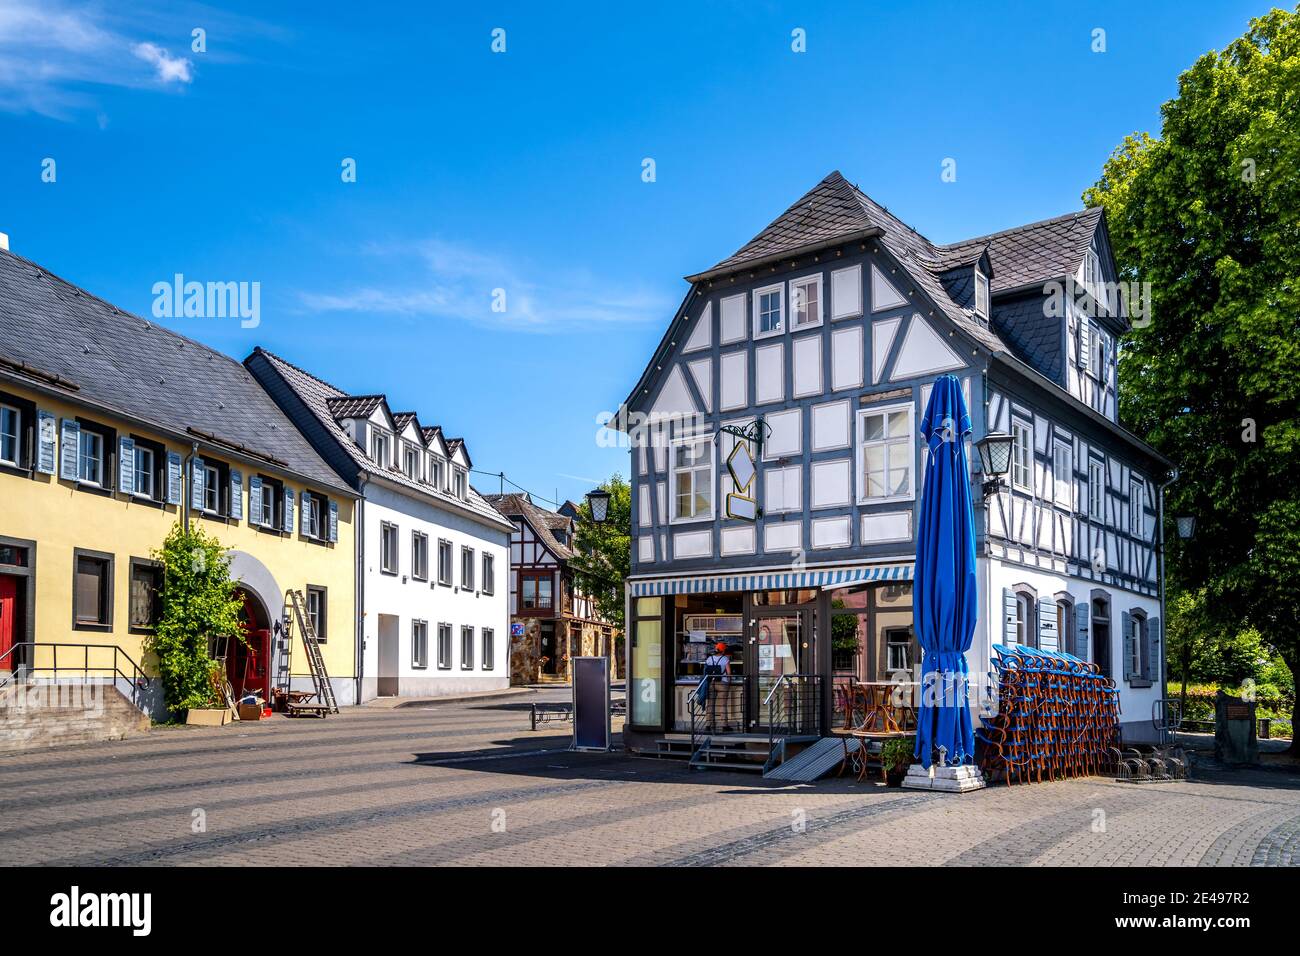 Historical city, Engers, Neuwied, Rheinland-Pfalz, Germany Stock Photo